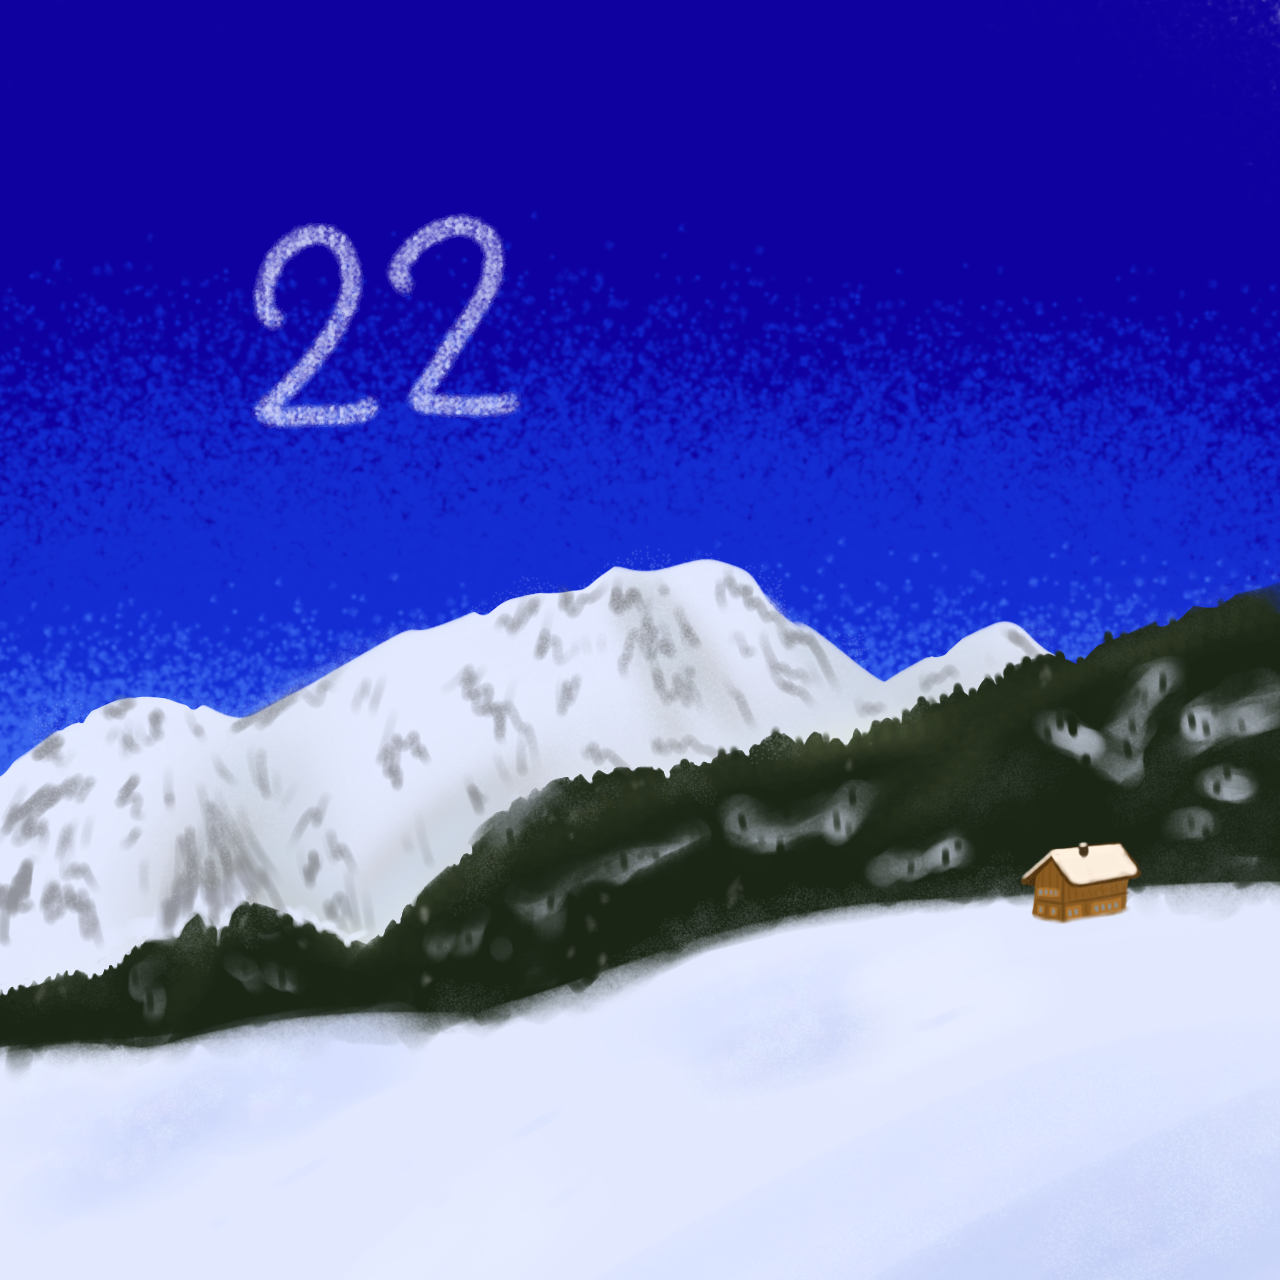 Eine gemalte Schnee-Landschaft. Darüber die Nummer 22.